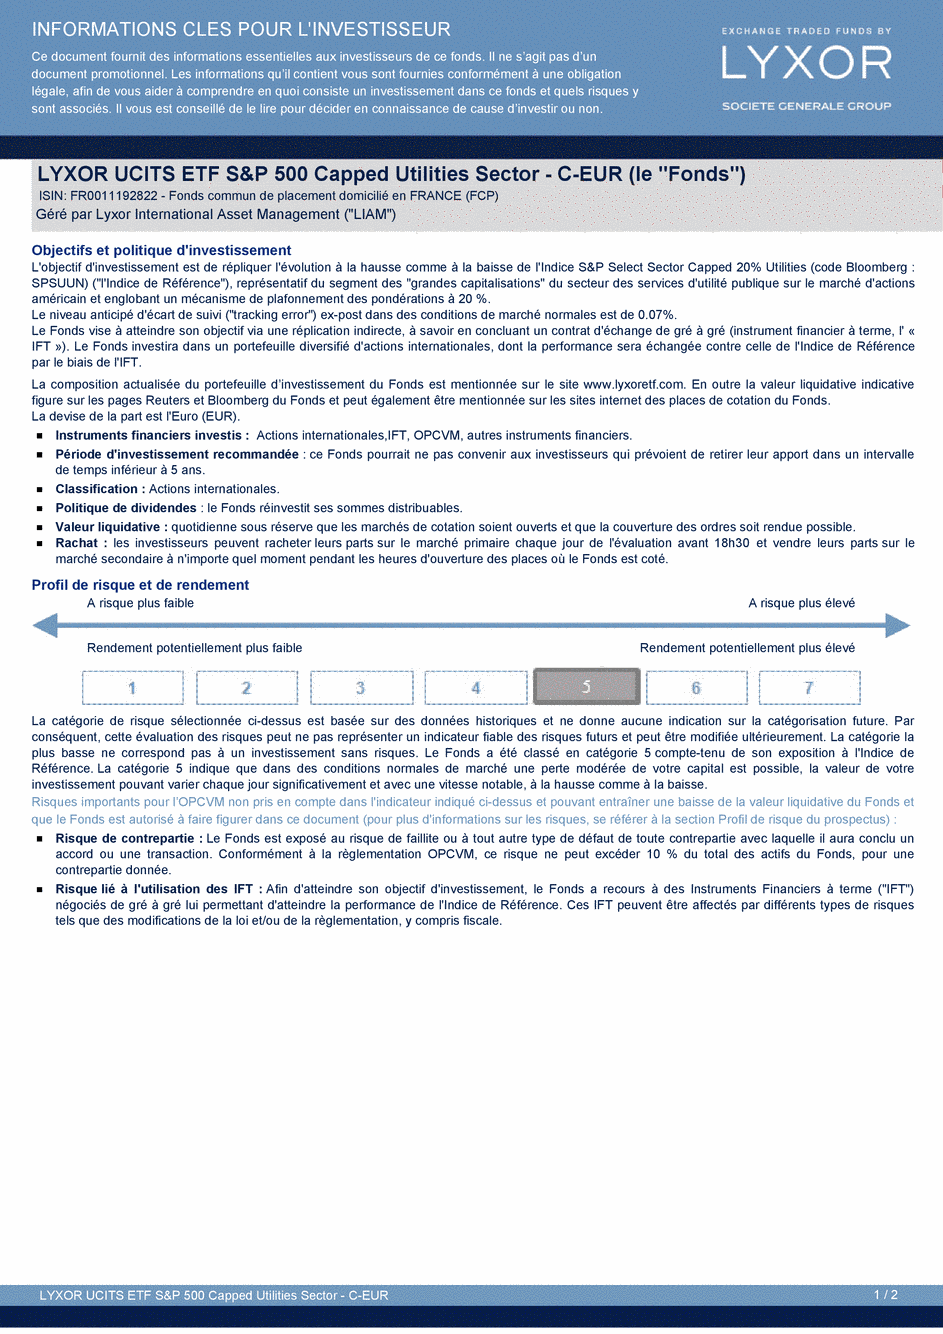 DICI LYXOR UCITS ETF S&P 500 CAPPED UTILITIES SECTOR PART C-EUR - 15/09/2014 - Français